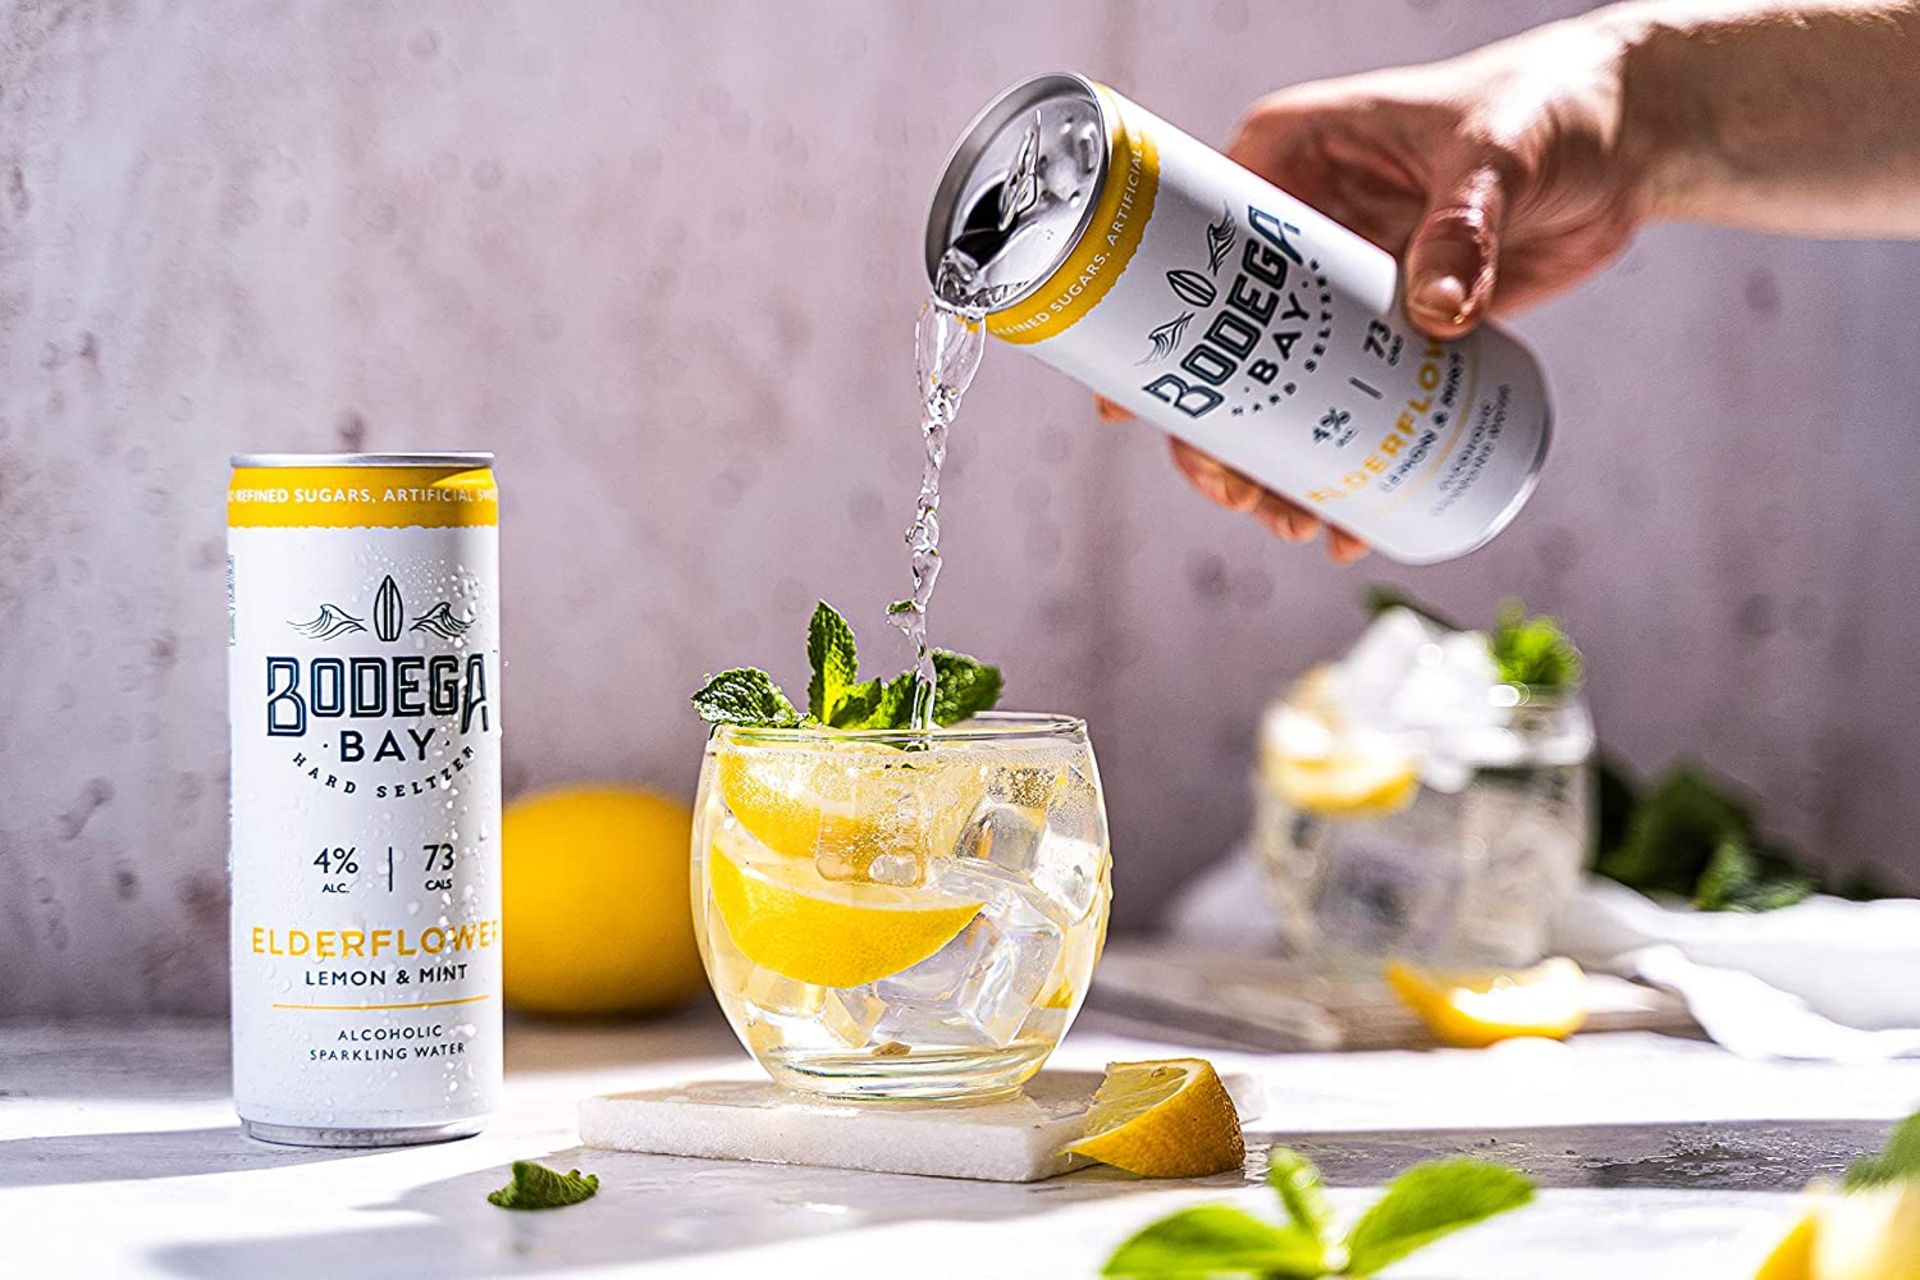 24 x Bodega Bay Hard Seltzer 250ml Alcoholic Sparkling Water Drinks - Elderflower Lemon & Mint - - Image 7 of 10